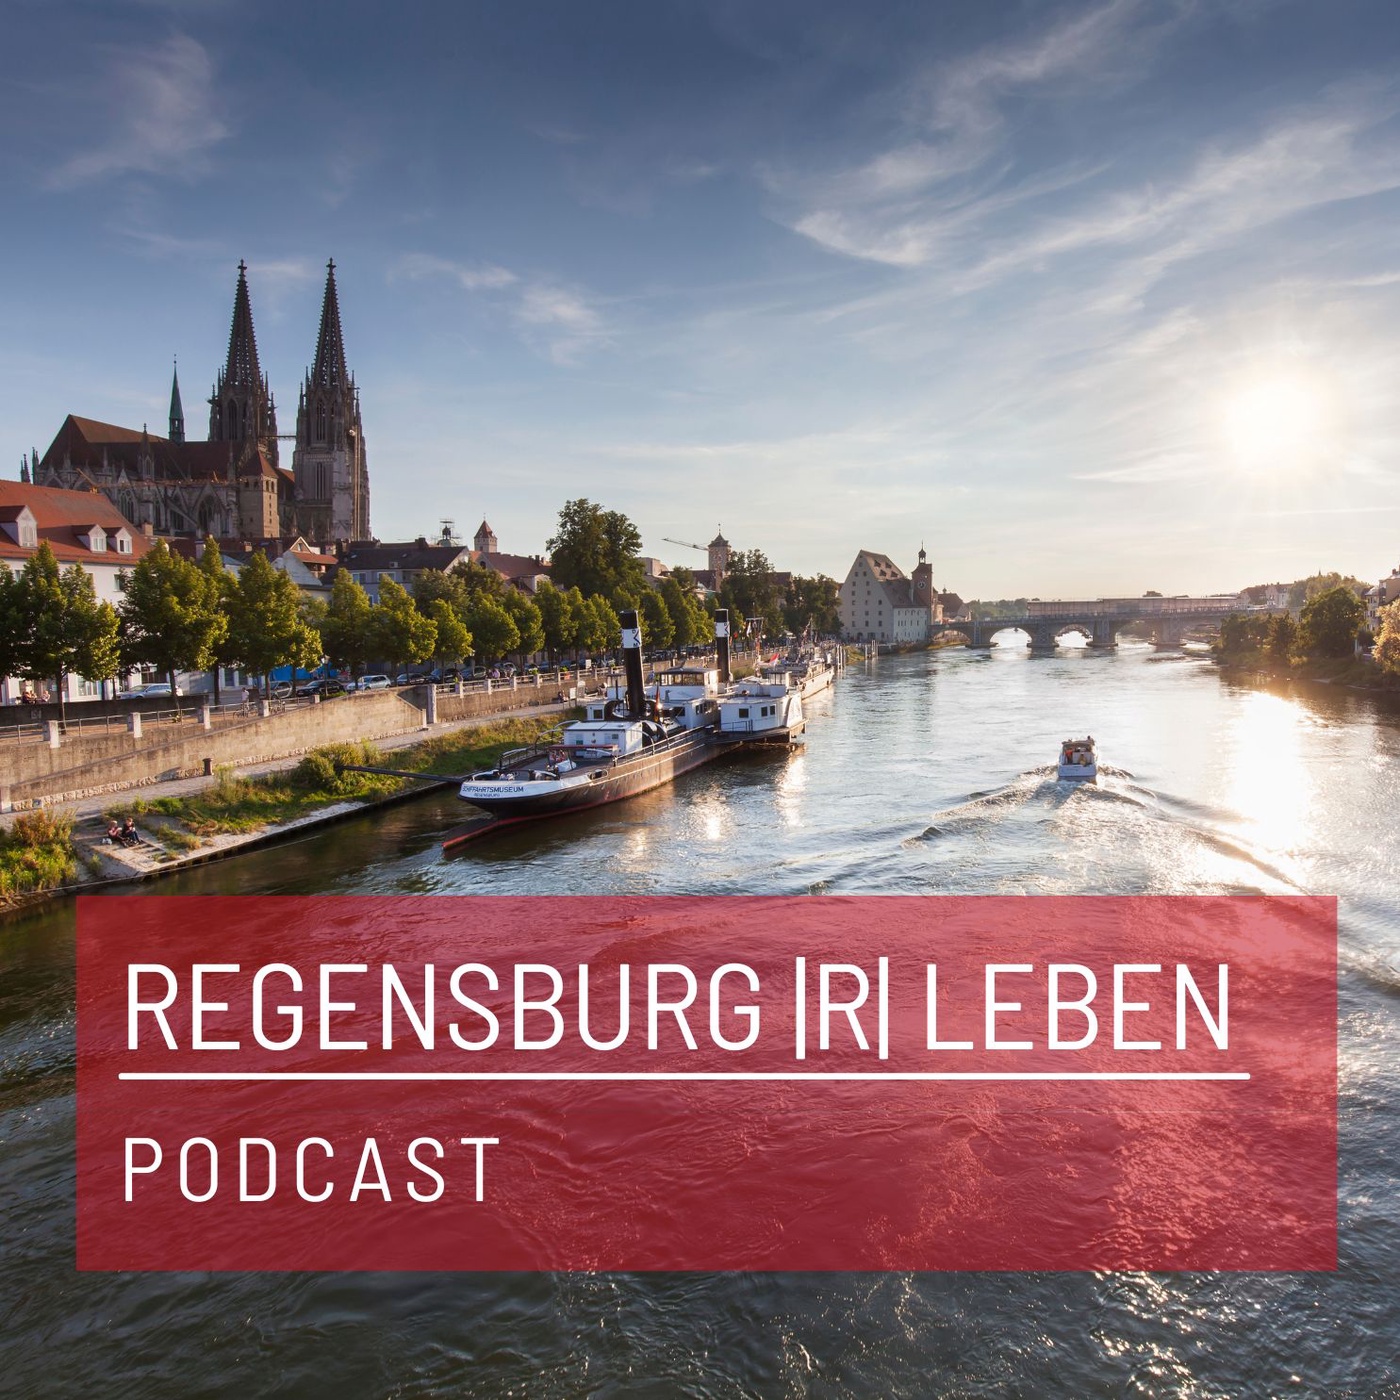 REGENSBURG |R| LEBEN